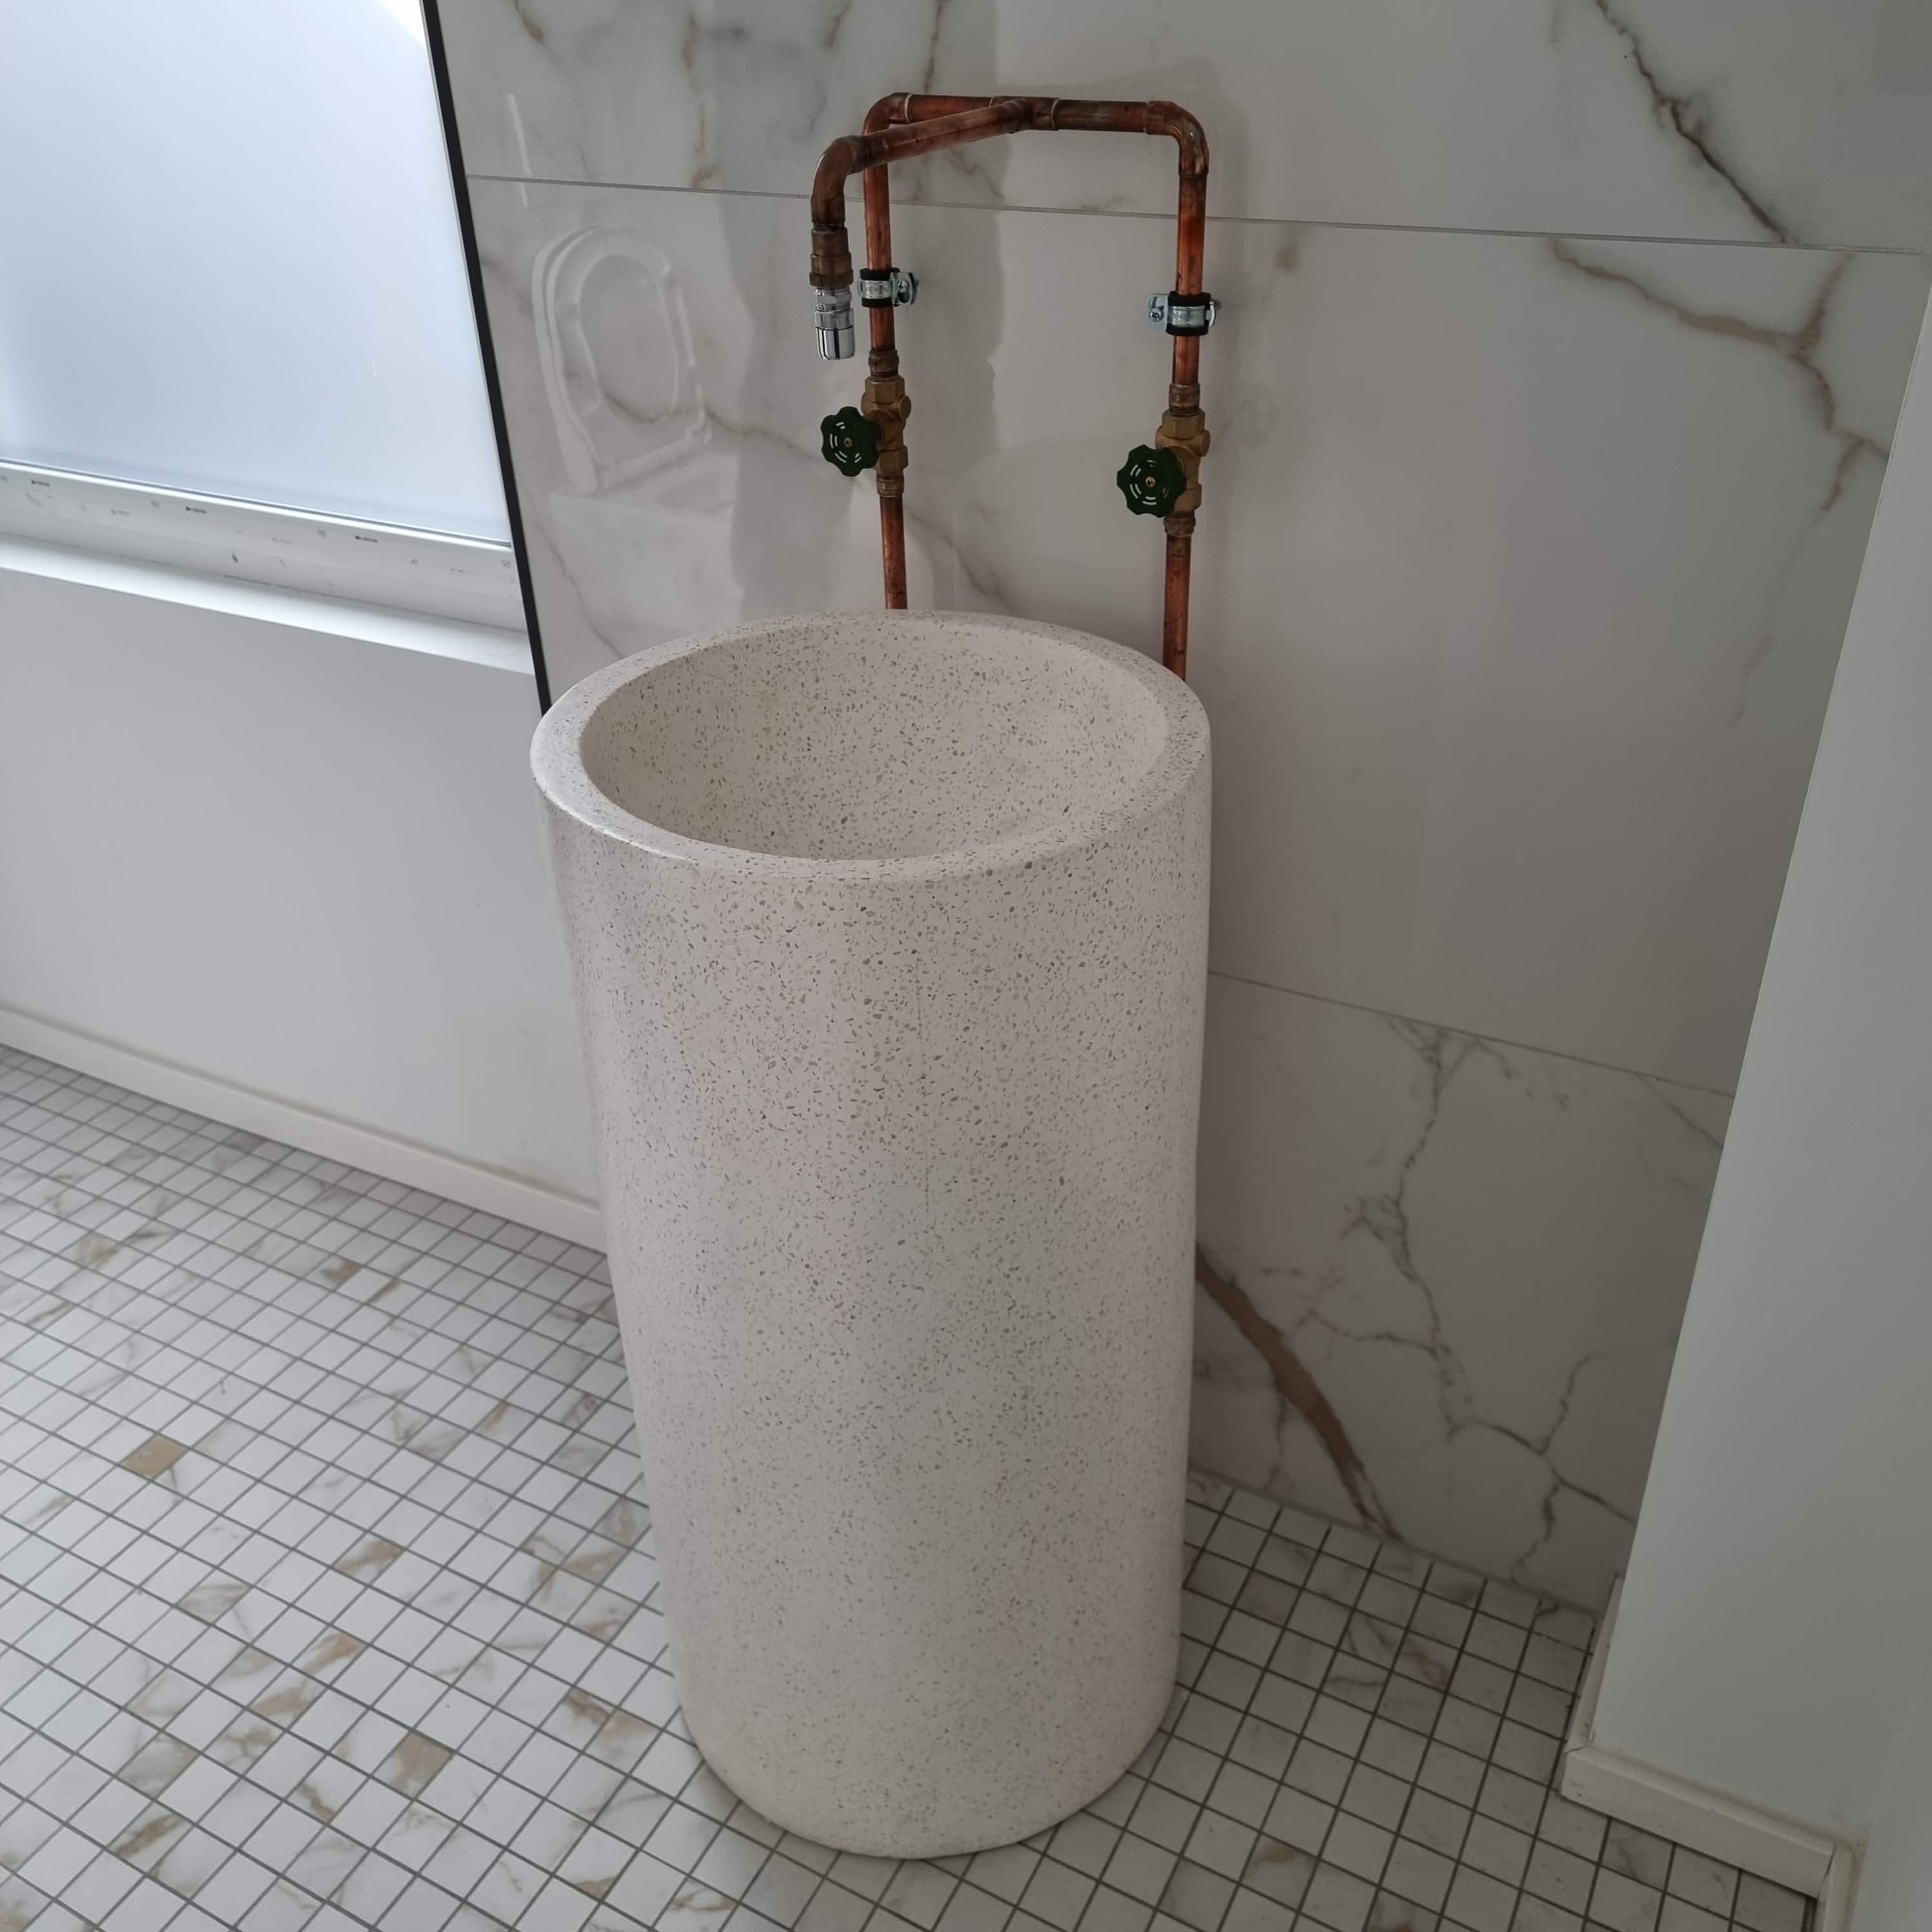 A large round washbasin made of white stone